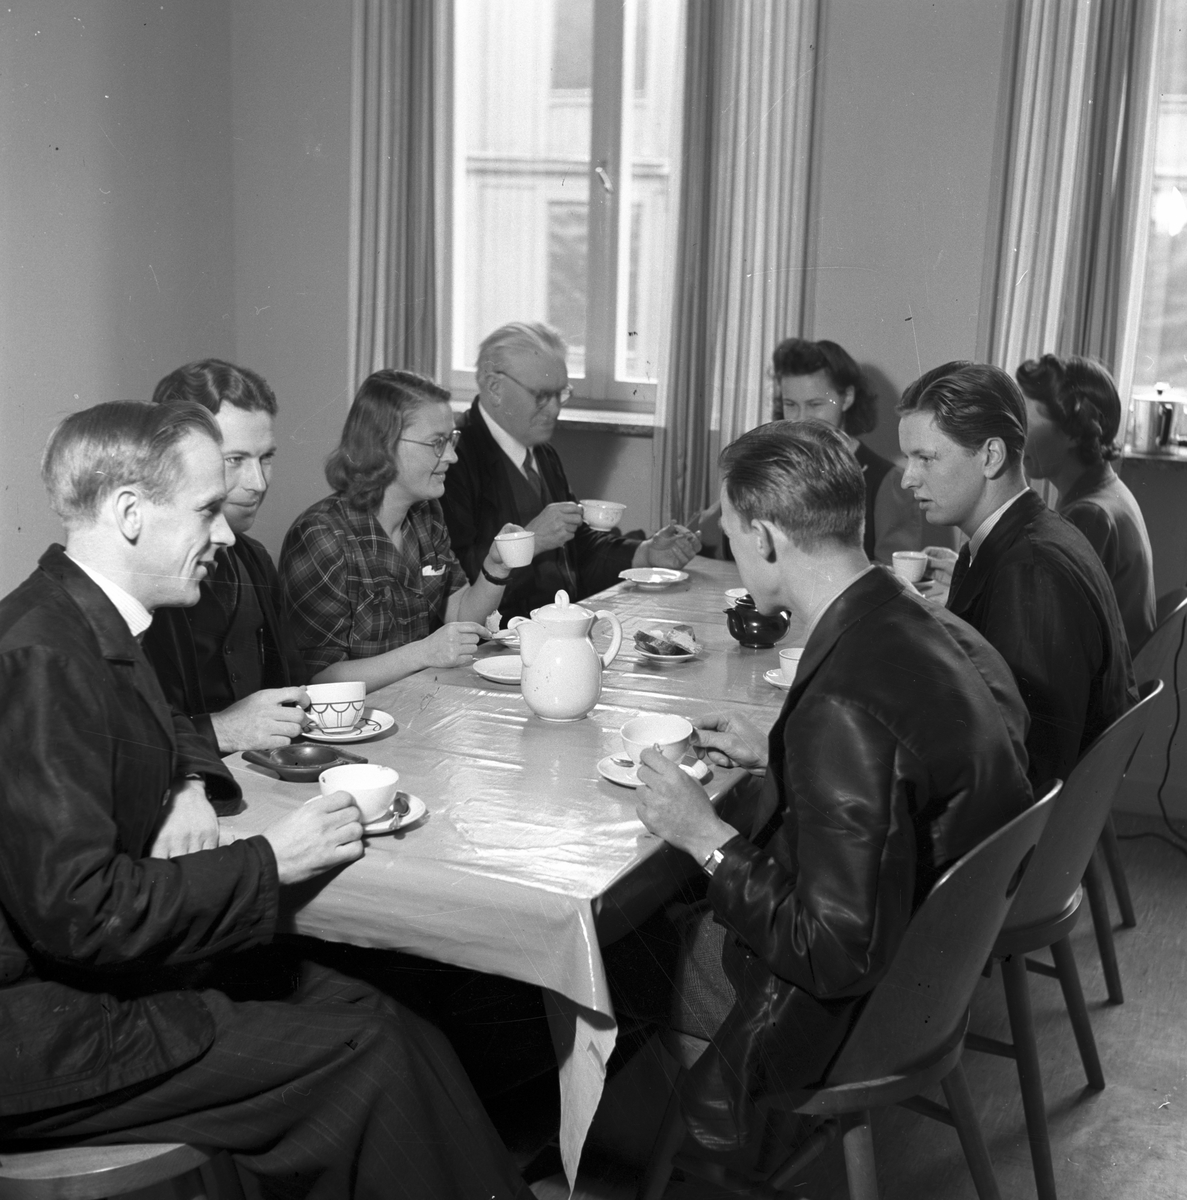 Första dagen kaffet ät fritt. 1 november 1945.